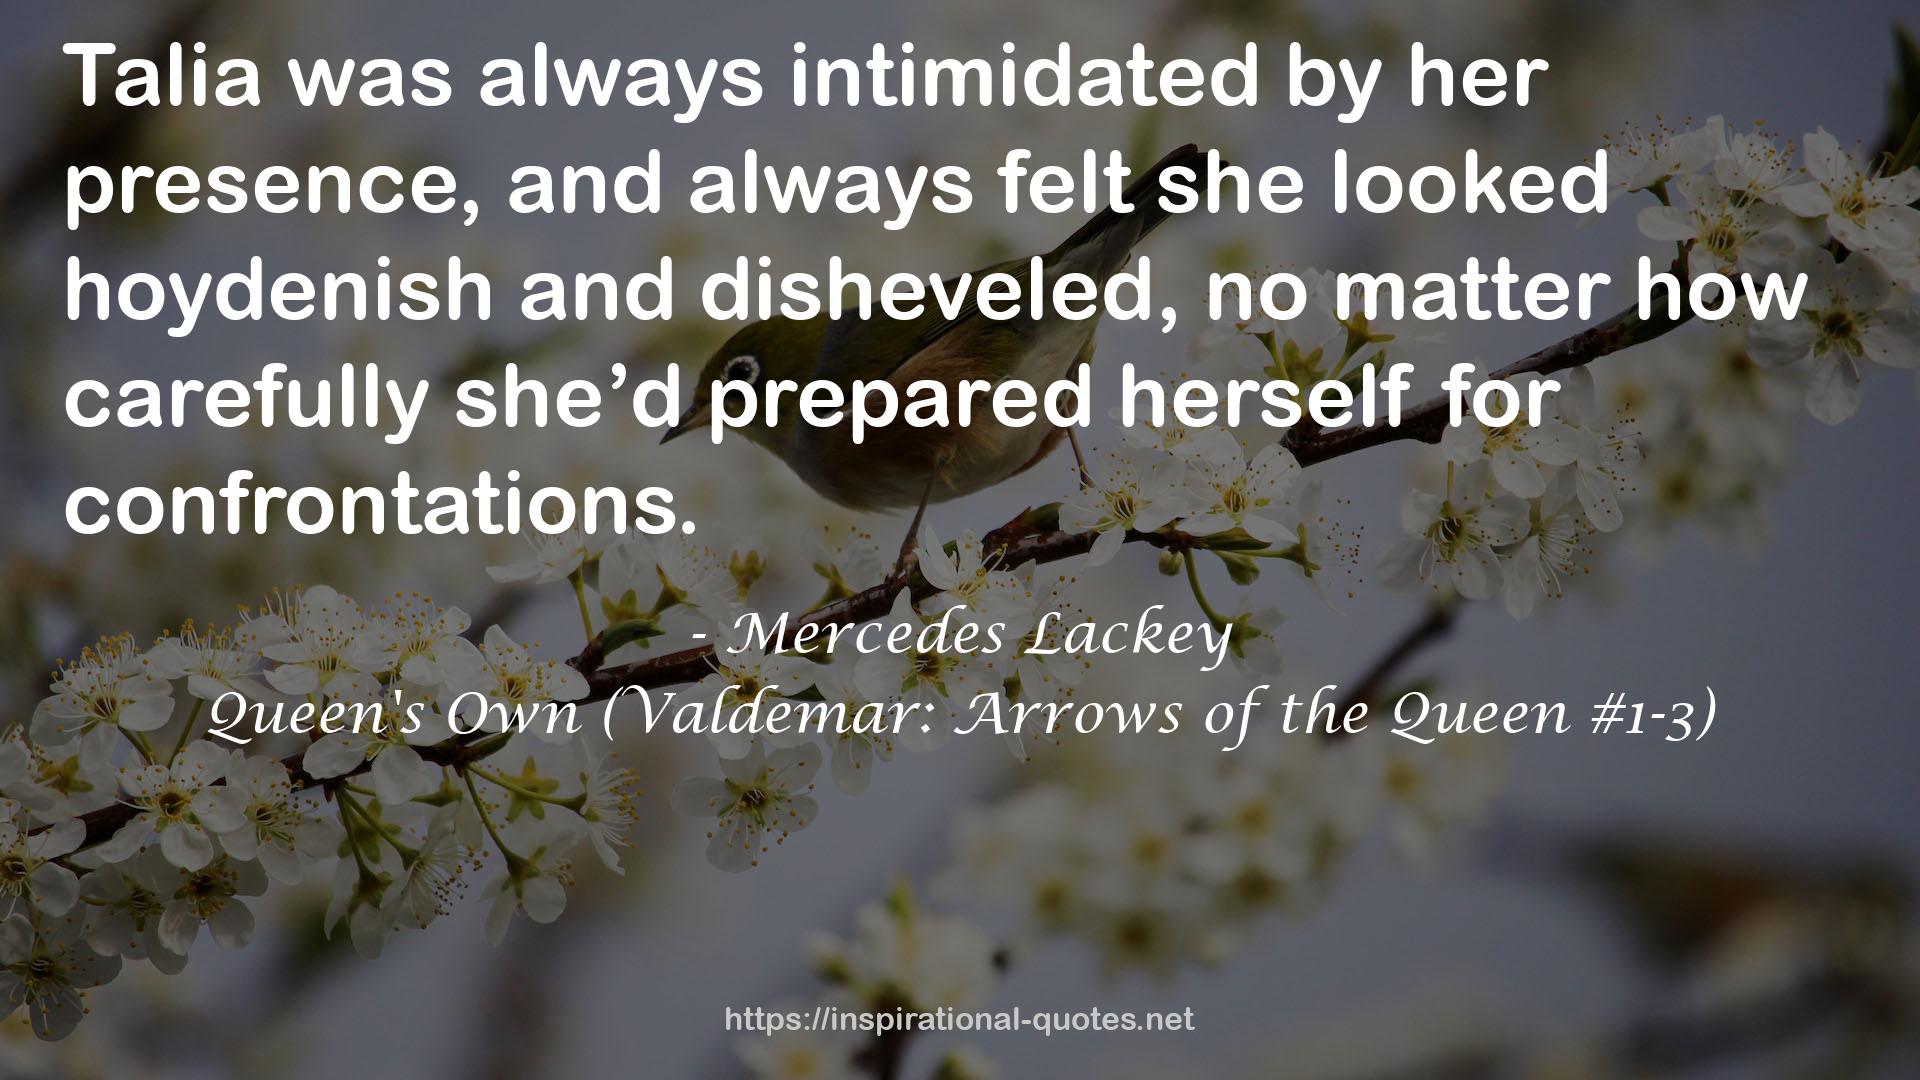 Queen's Own (Valdemar: Arrows of the Queen #1-3) QUOTES